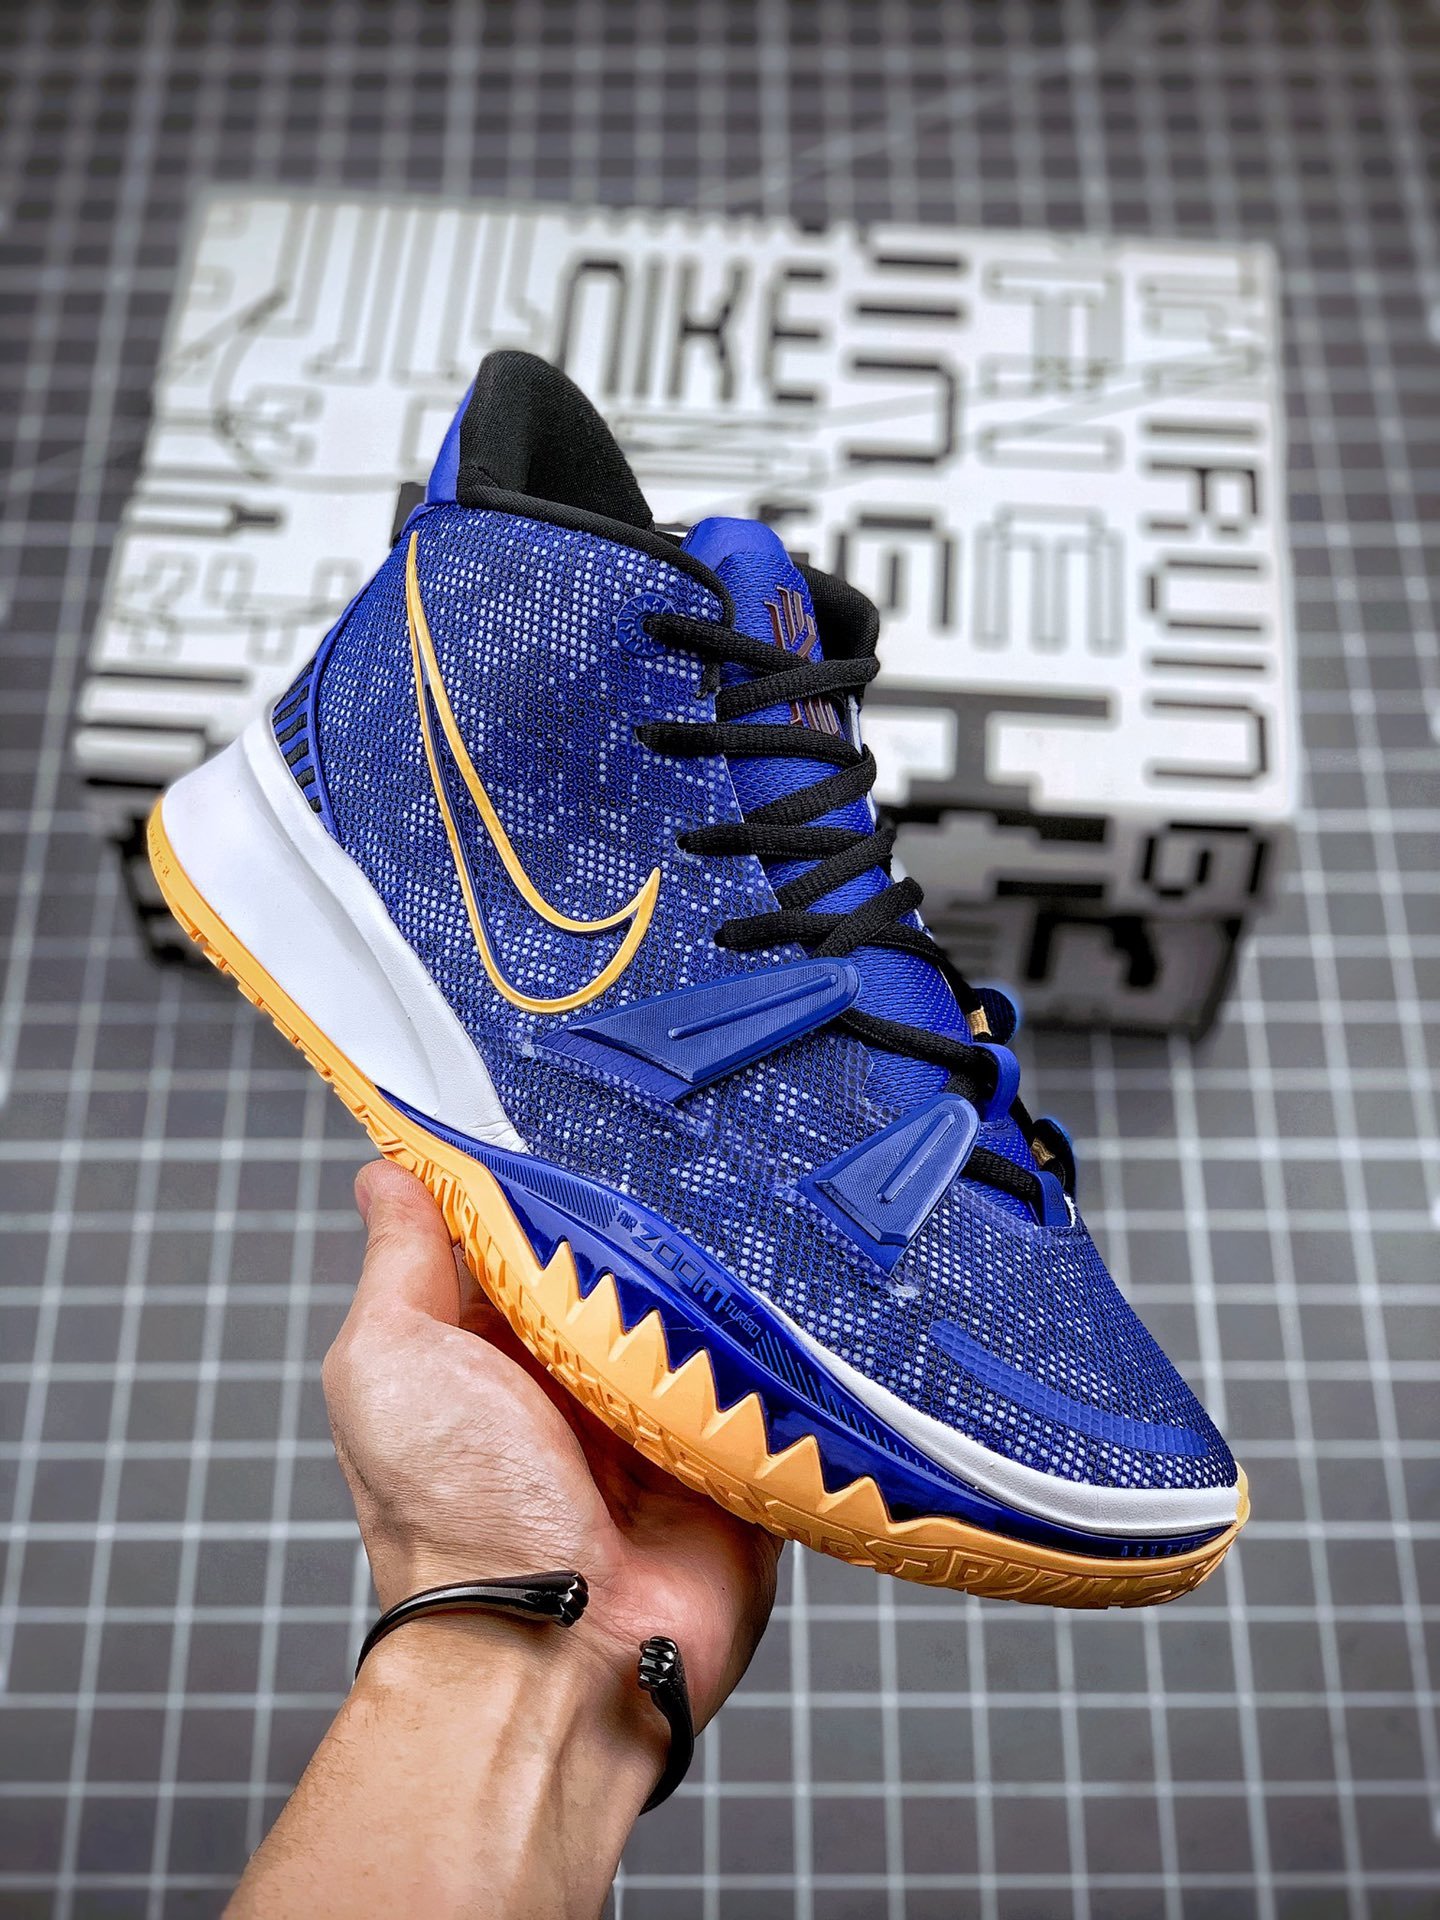 Nike Kyrie 7 "Sisterhood" Blue Shoes